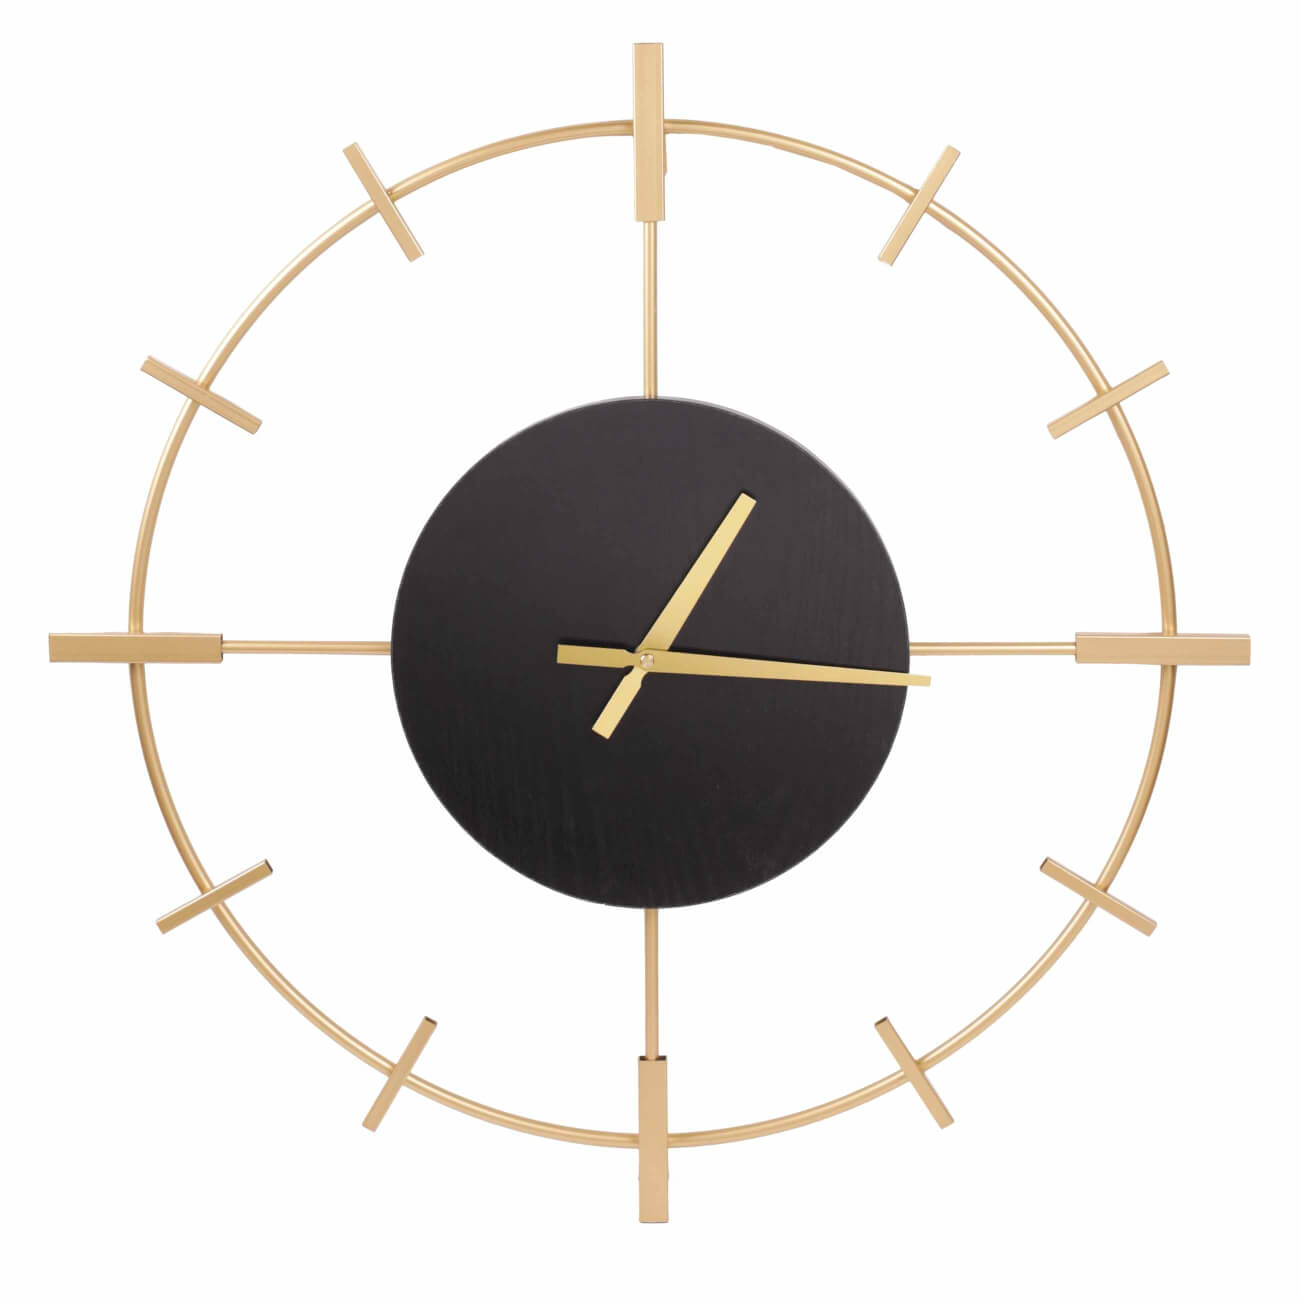 Часы настенные, 61 см, металл/дерево, круглые, черно-золотистые, Штурвал, Discovery часы настенные xy166822